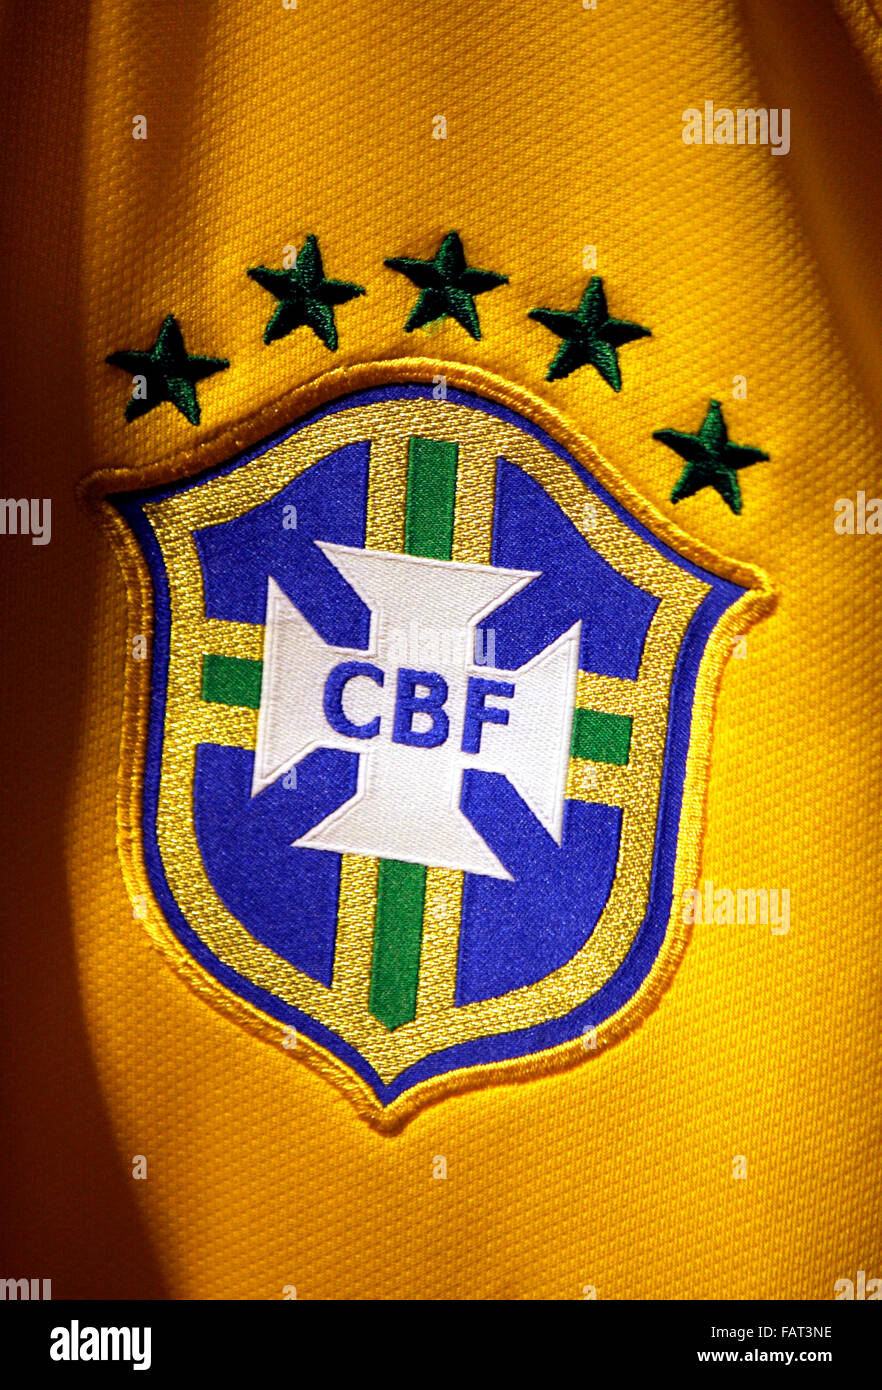 Das Logo der Brasilianischen Fussball-Nationalmannschaft "Selecao", Berlin. Stockfoto